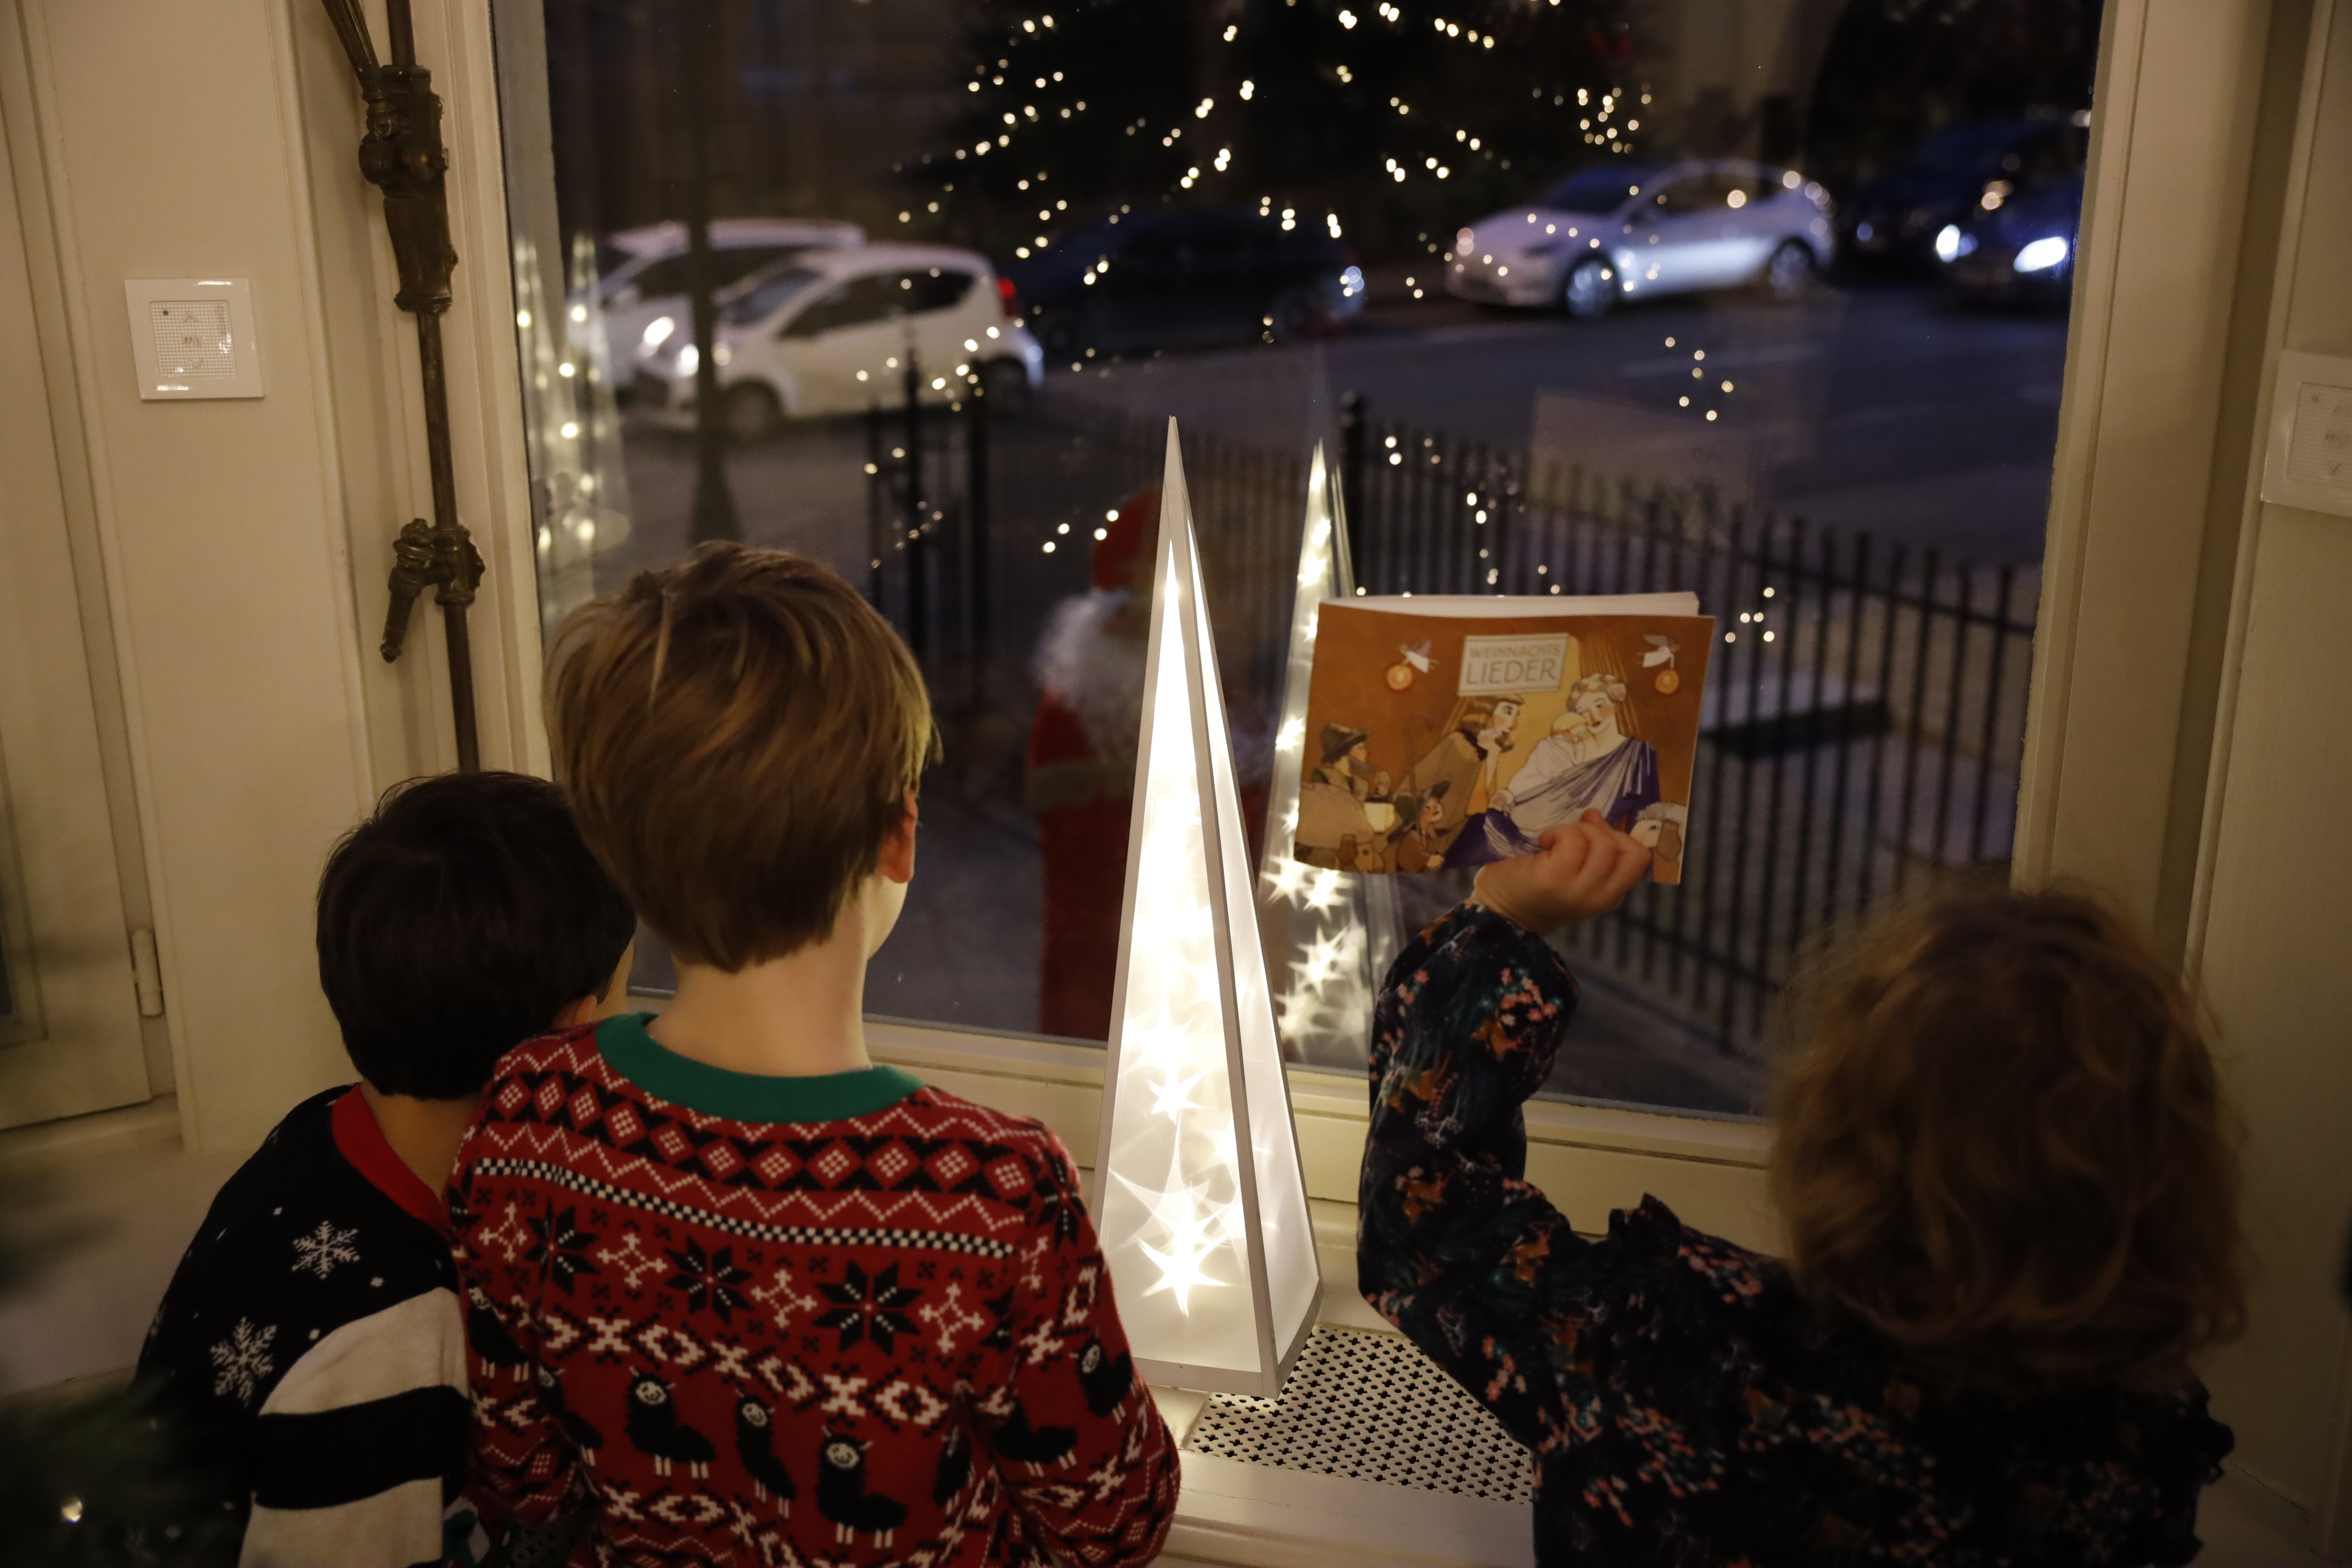 Dieselben drei Kinder stehen vor dem Fenster. Draußen steht de Nikolaus. Ein Mädchen winkt mit einem Liederbuch.